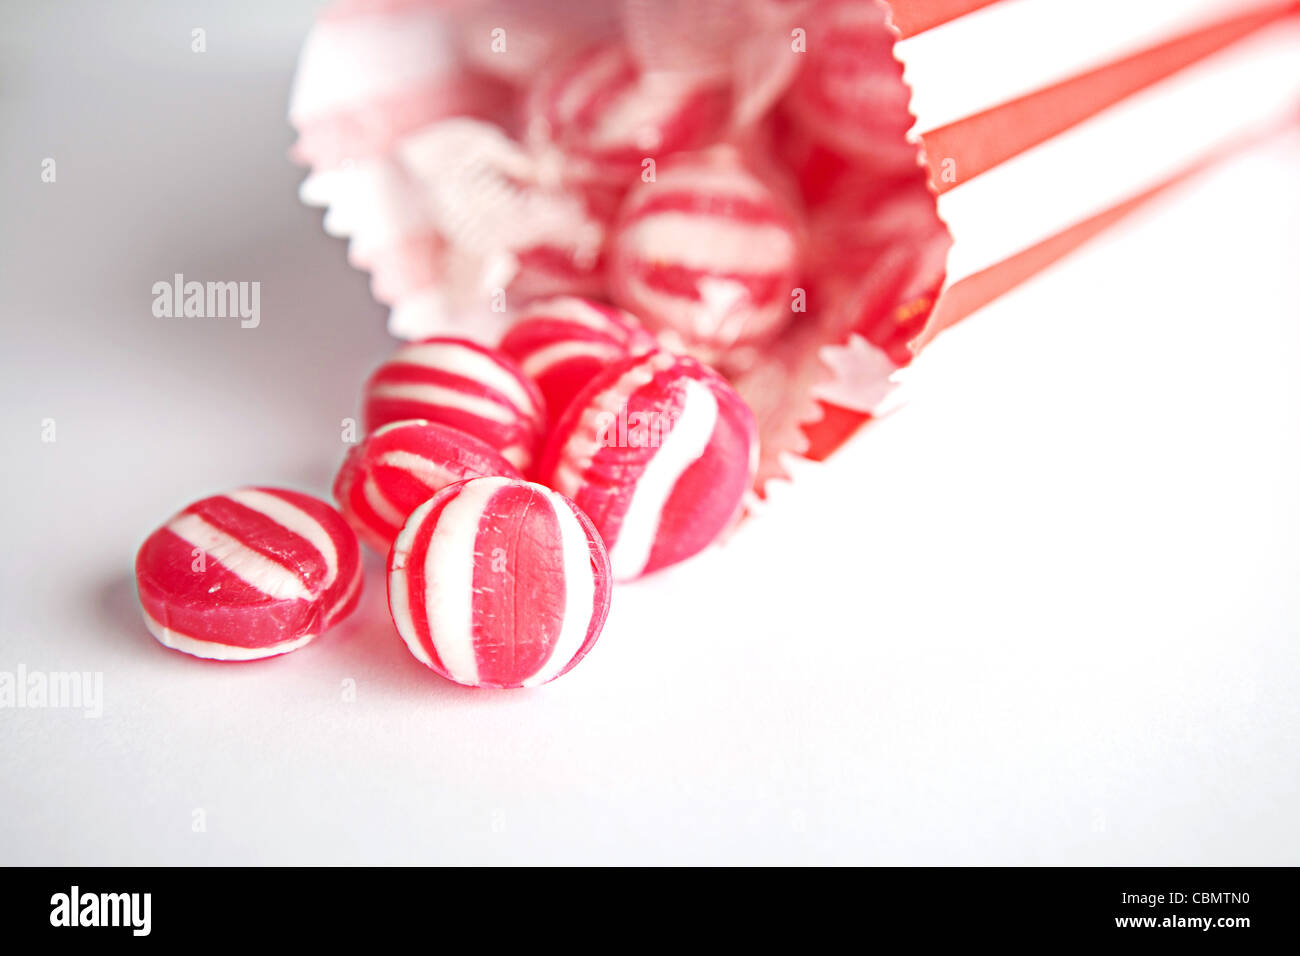 Rayé rouge et blanc bonbons menthe s'échappant d'un sac en papier Banque D'Images